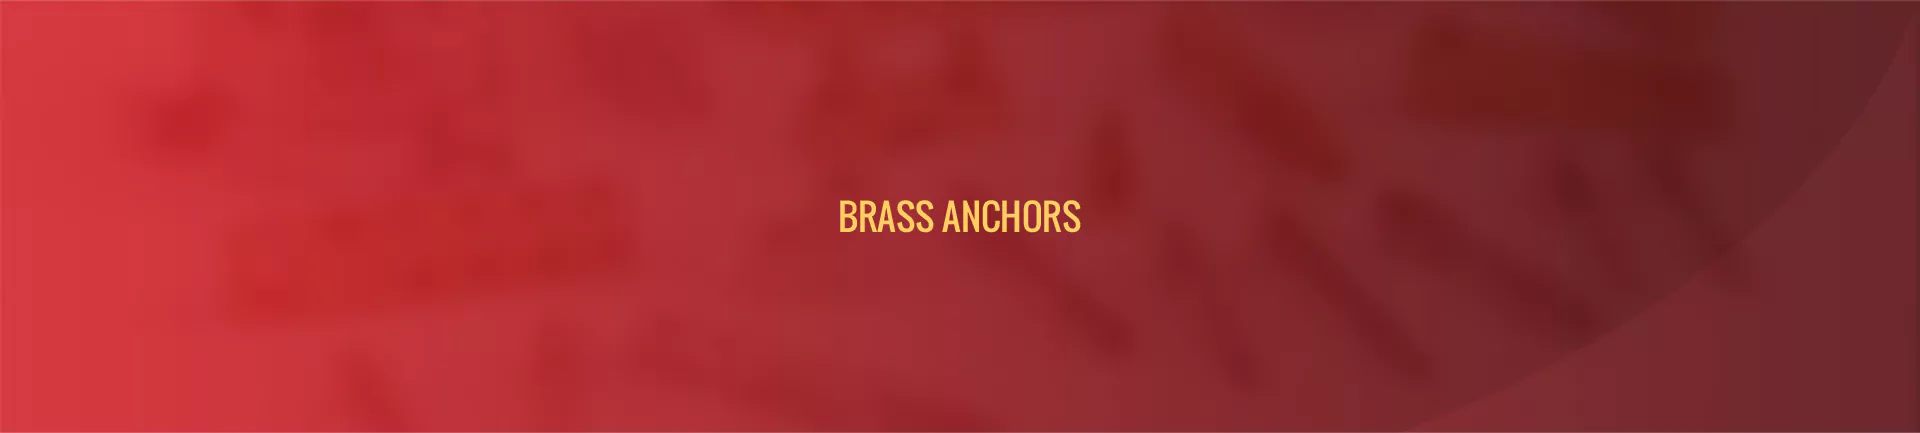 brass-anchors-banner